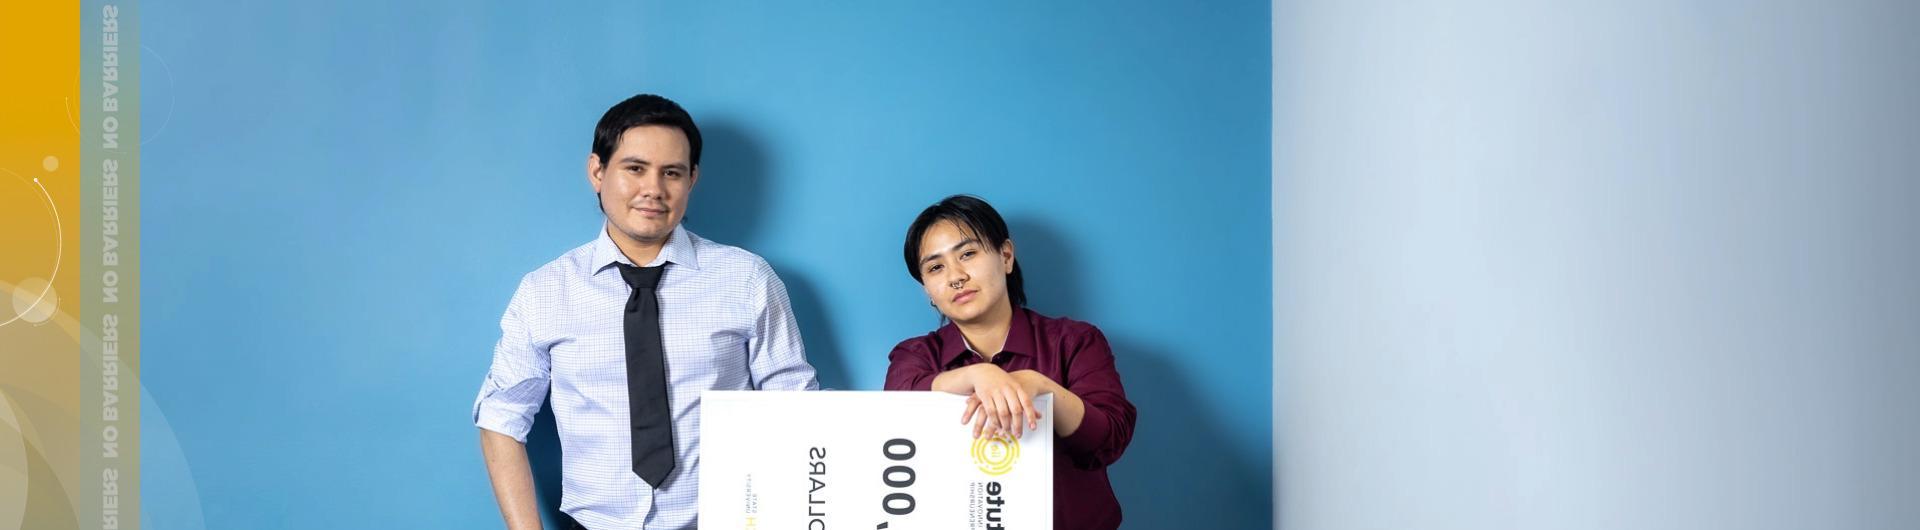 2024年太阳石创新挑战赛的获胜者斯泰西和安东尼奥·阿尔瓦拉多获得了超大的15美元奖金,000 check